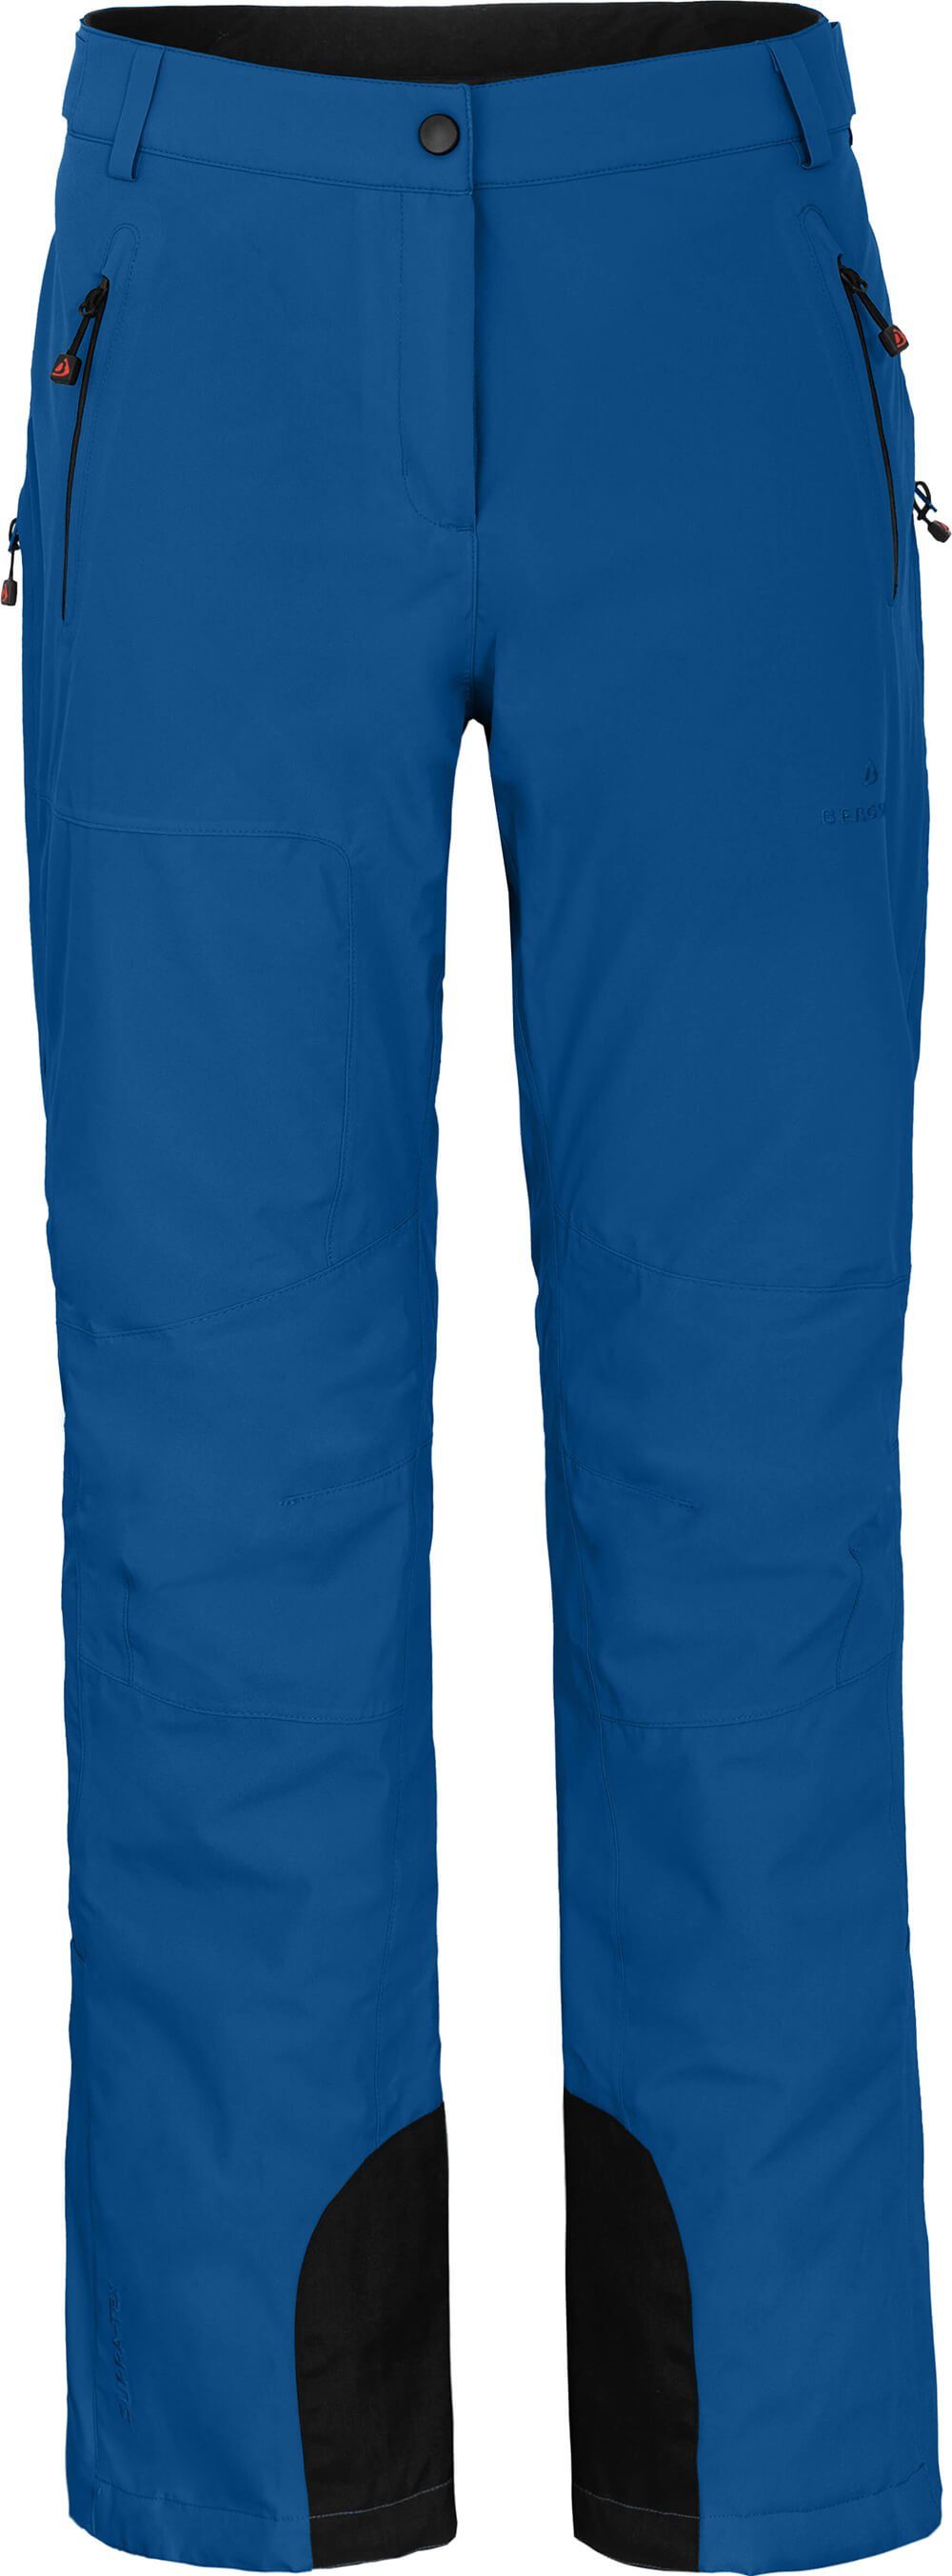 Bergson Skihose Normalgrößen, unwattiert, blau Skihose, Wassersäule, ICE klassisch mm light 20000 Damen